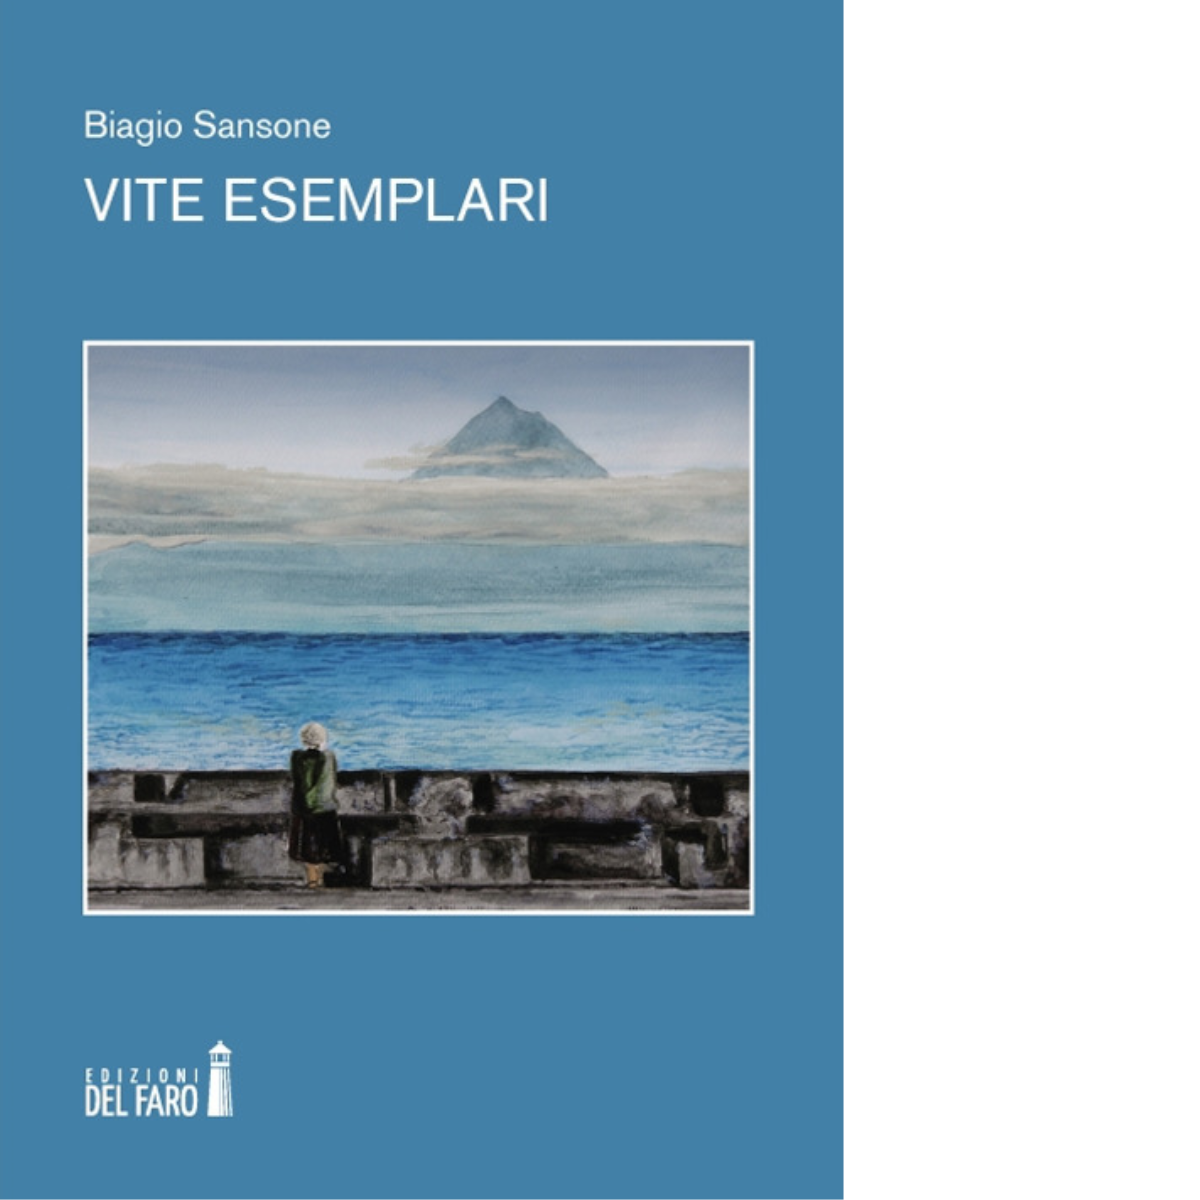 Vite esemplari di Biagio Sansone - Edizioni Del Faro, 2018